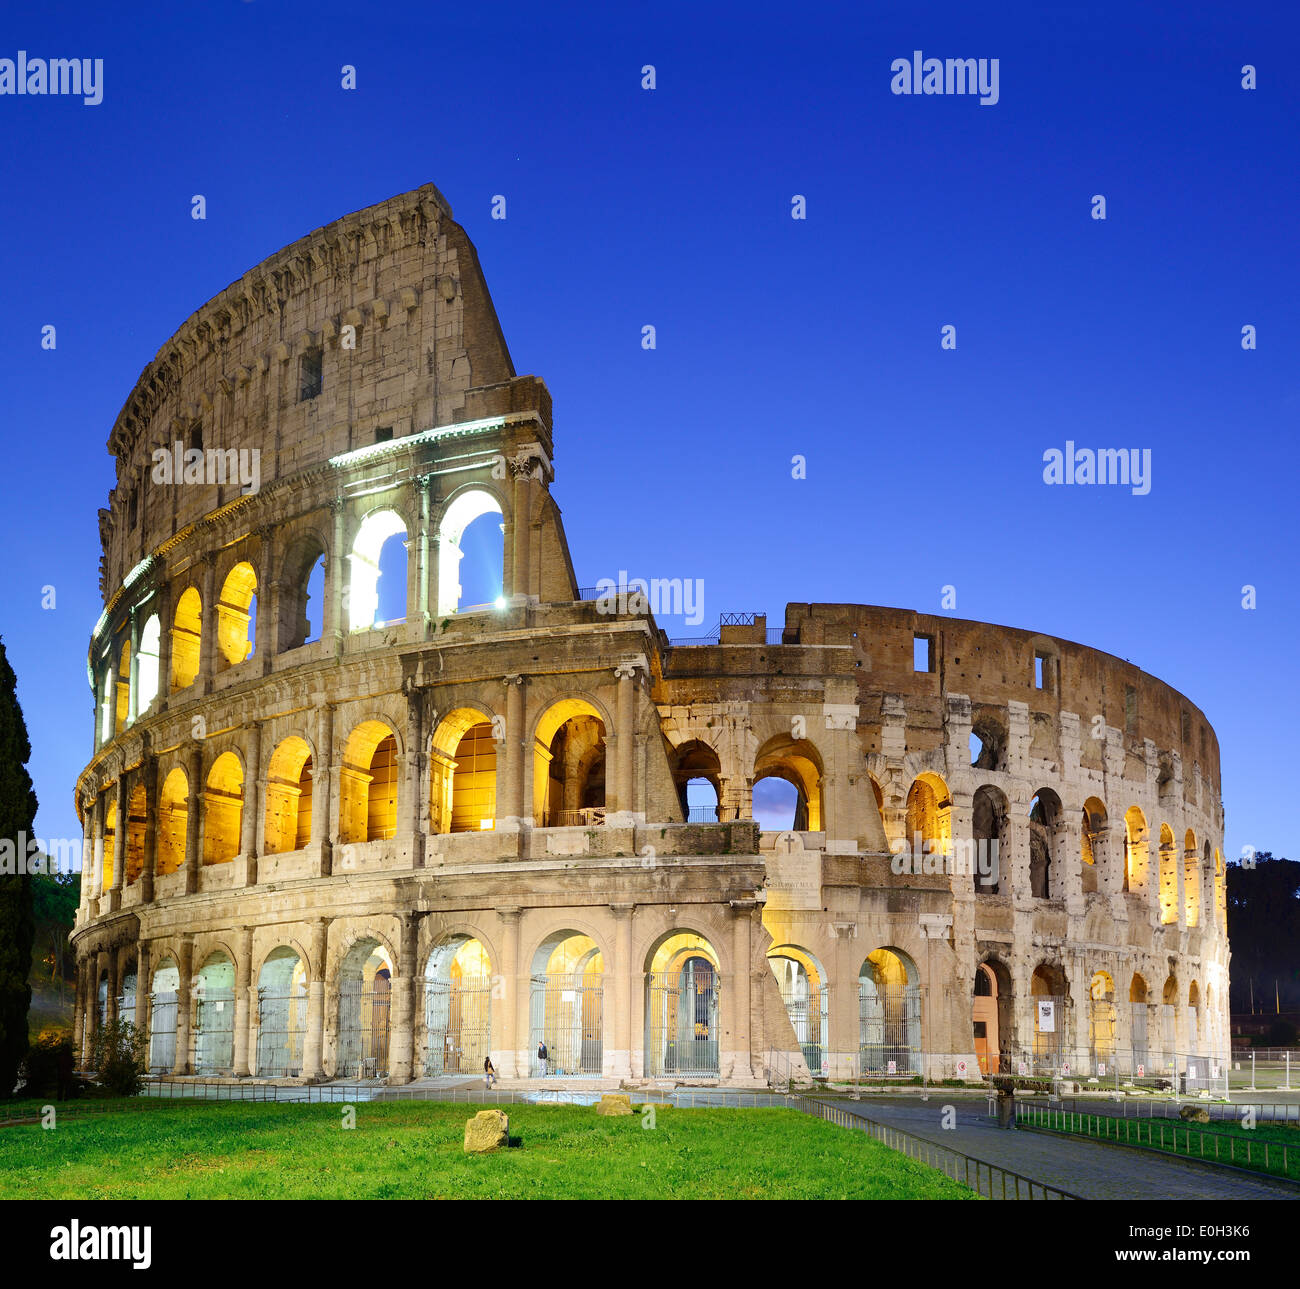 Encendida en el Coliseo de Roma por la noche, la UNESCO Patrimonio de la Humanidad Roma, Roma, Lacio, Lacio, Italia Foto de stock